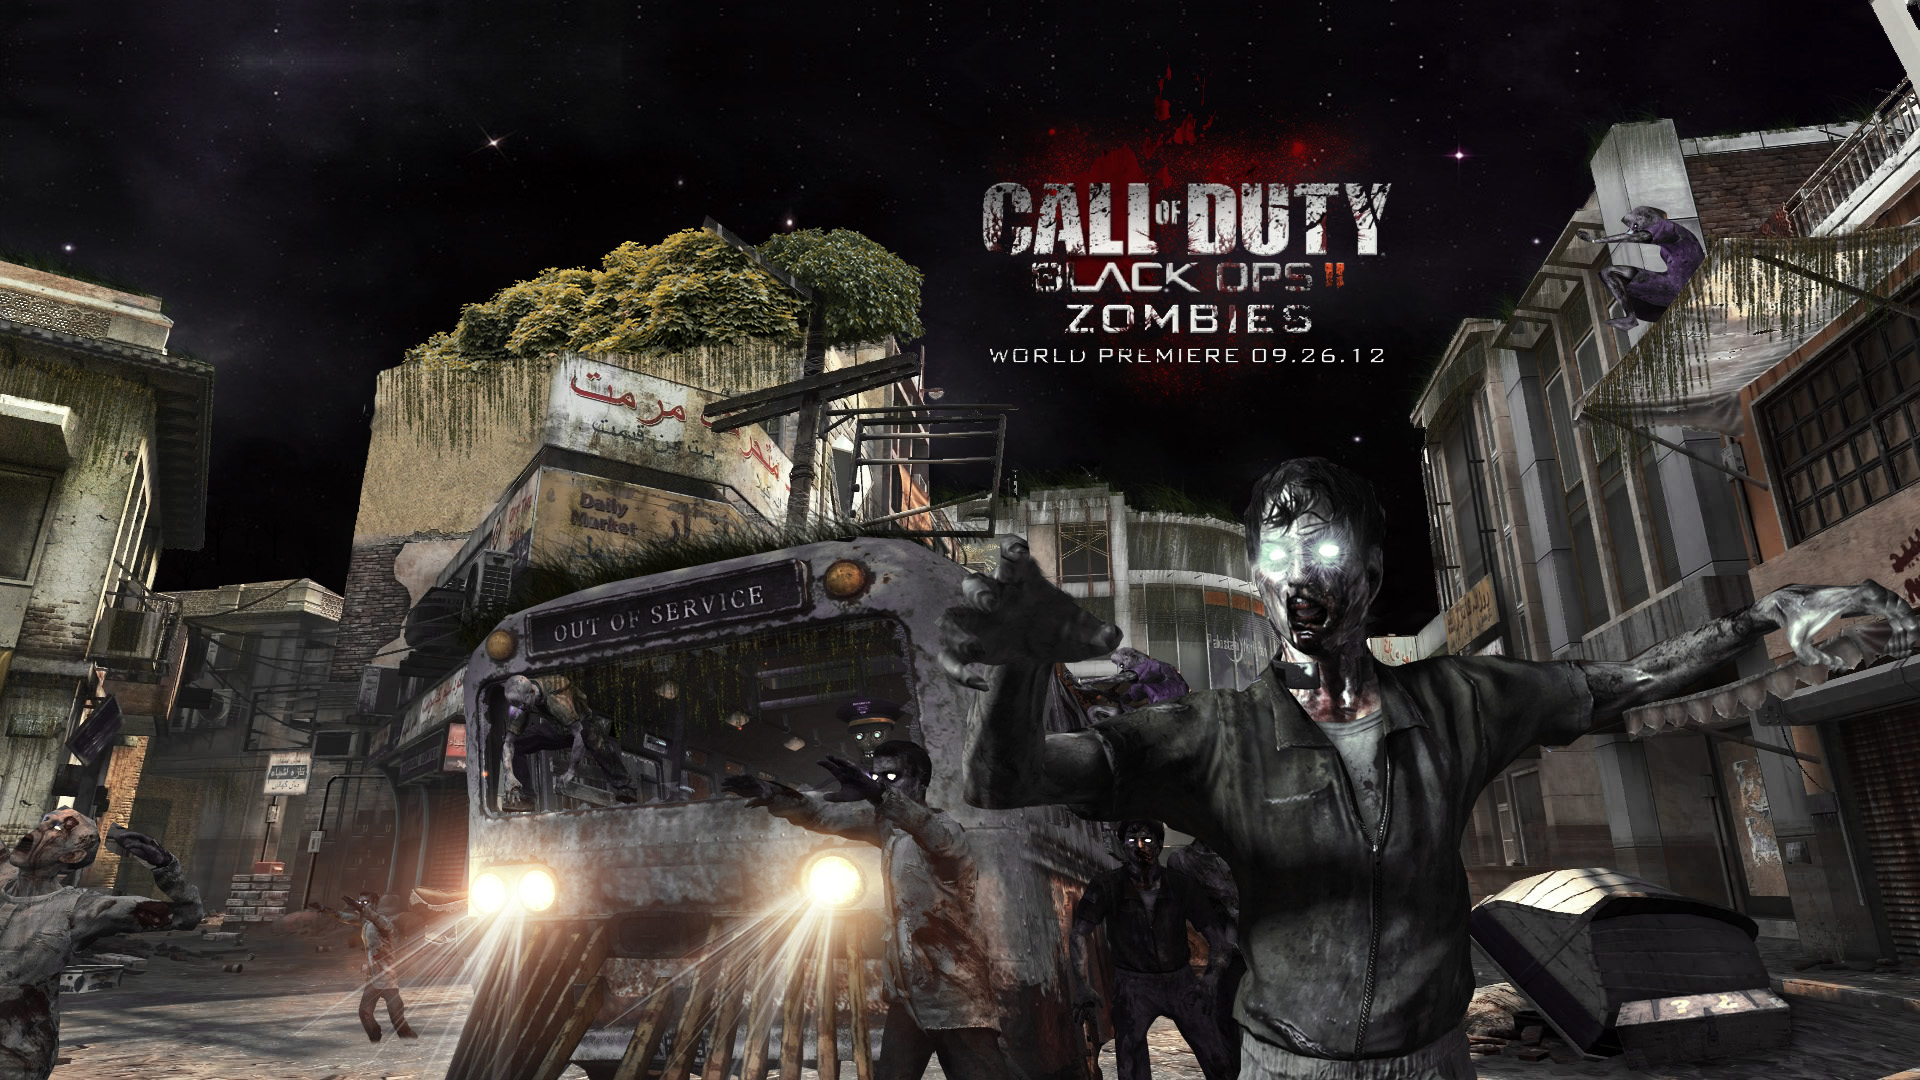 Call of duty black ops 2 zombies wallpaper | danasrfg.top